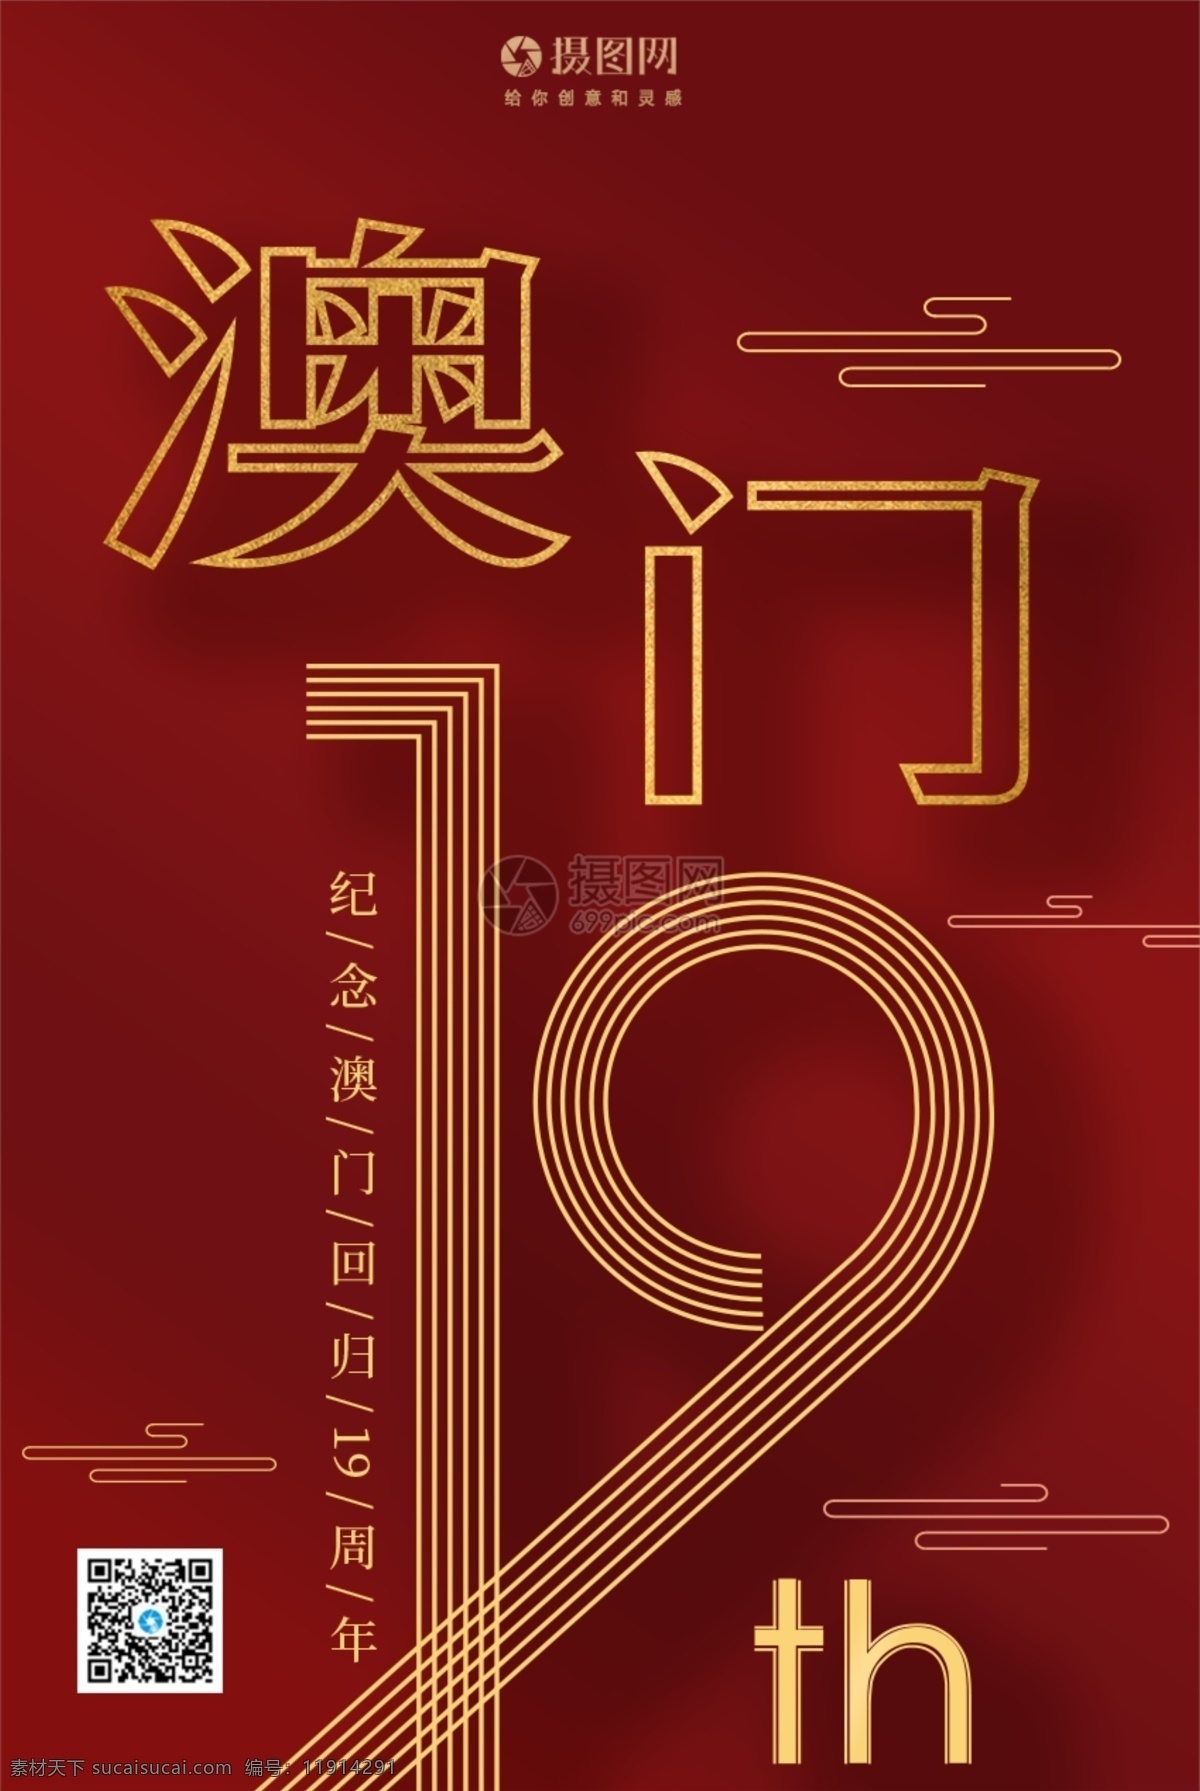 庆祝 澳门回归 周年 澳门 19周年 红色 喜庆 纪念日 创意海报 海报